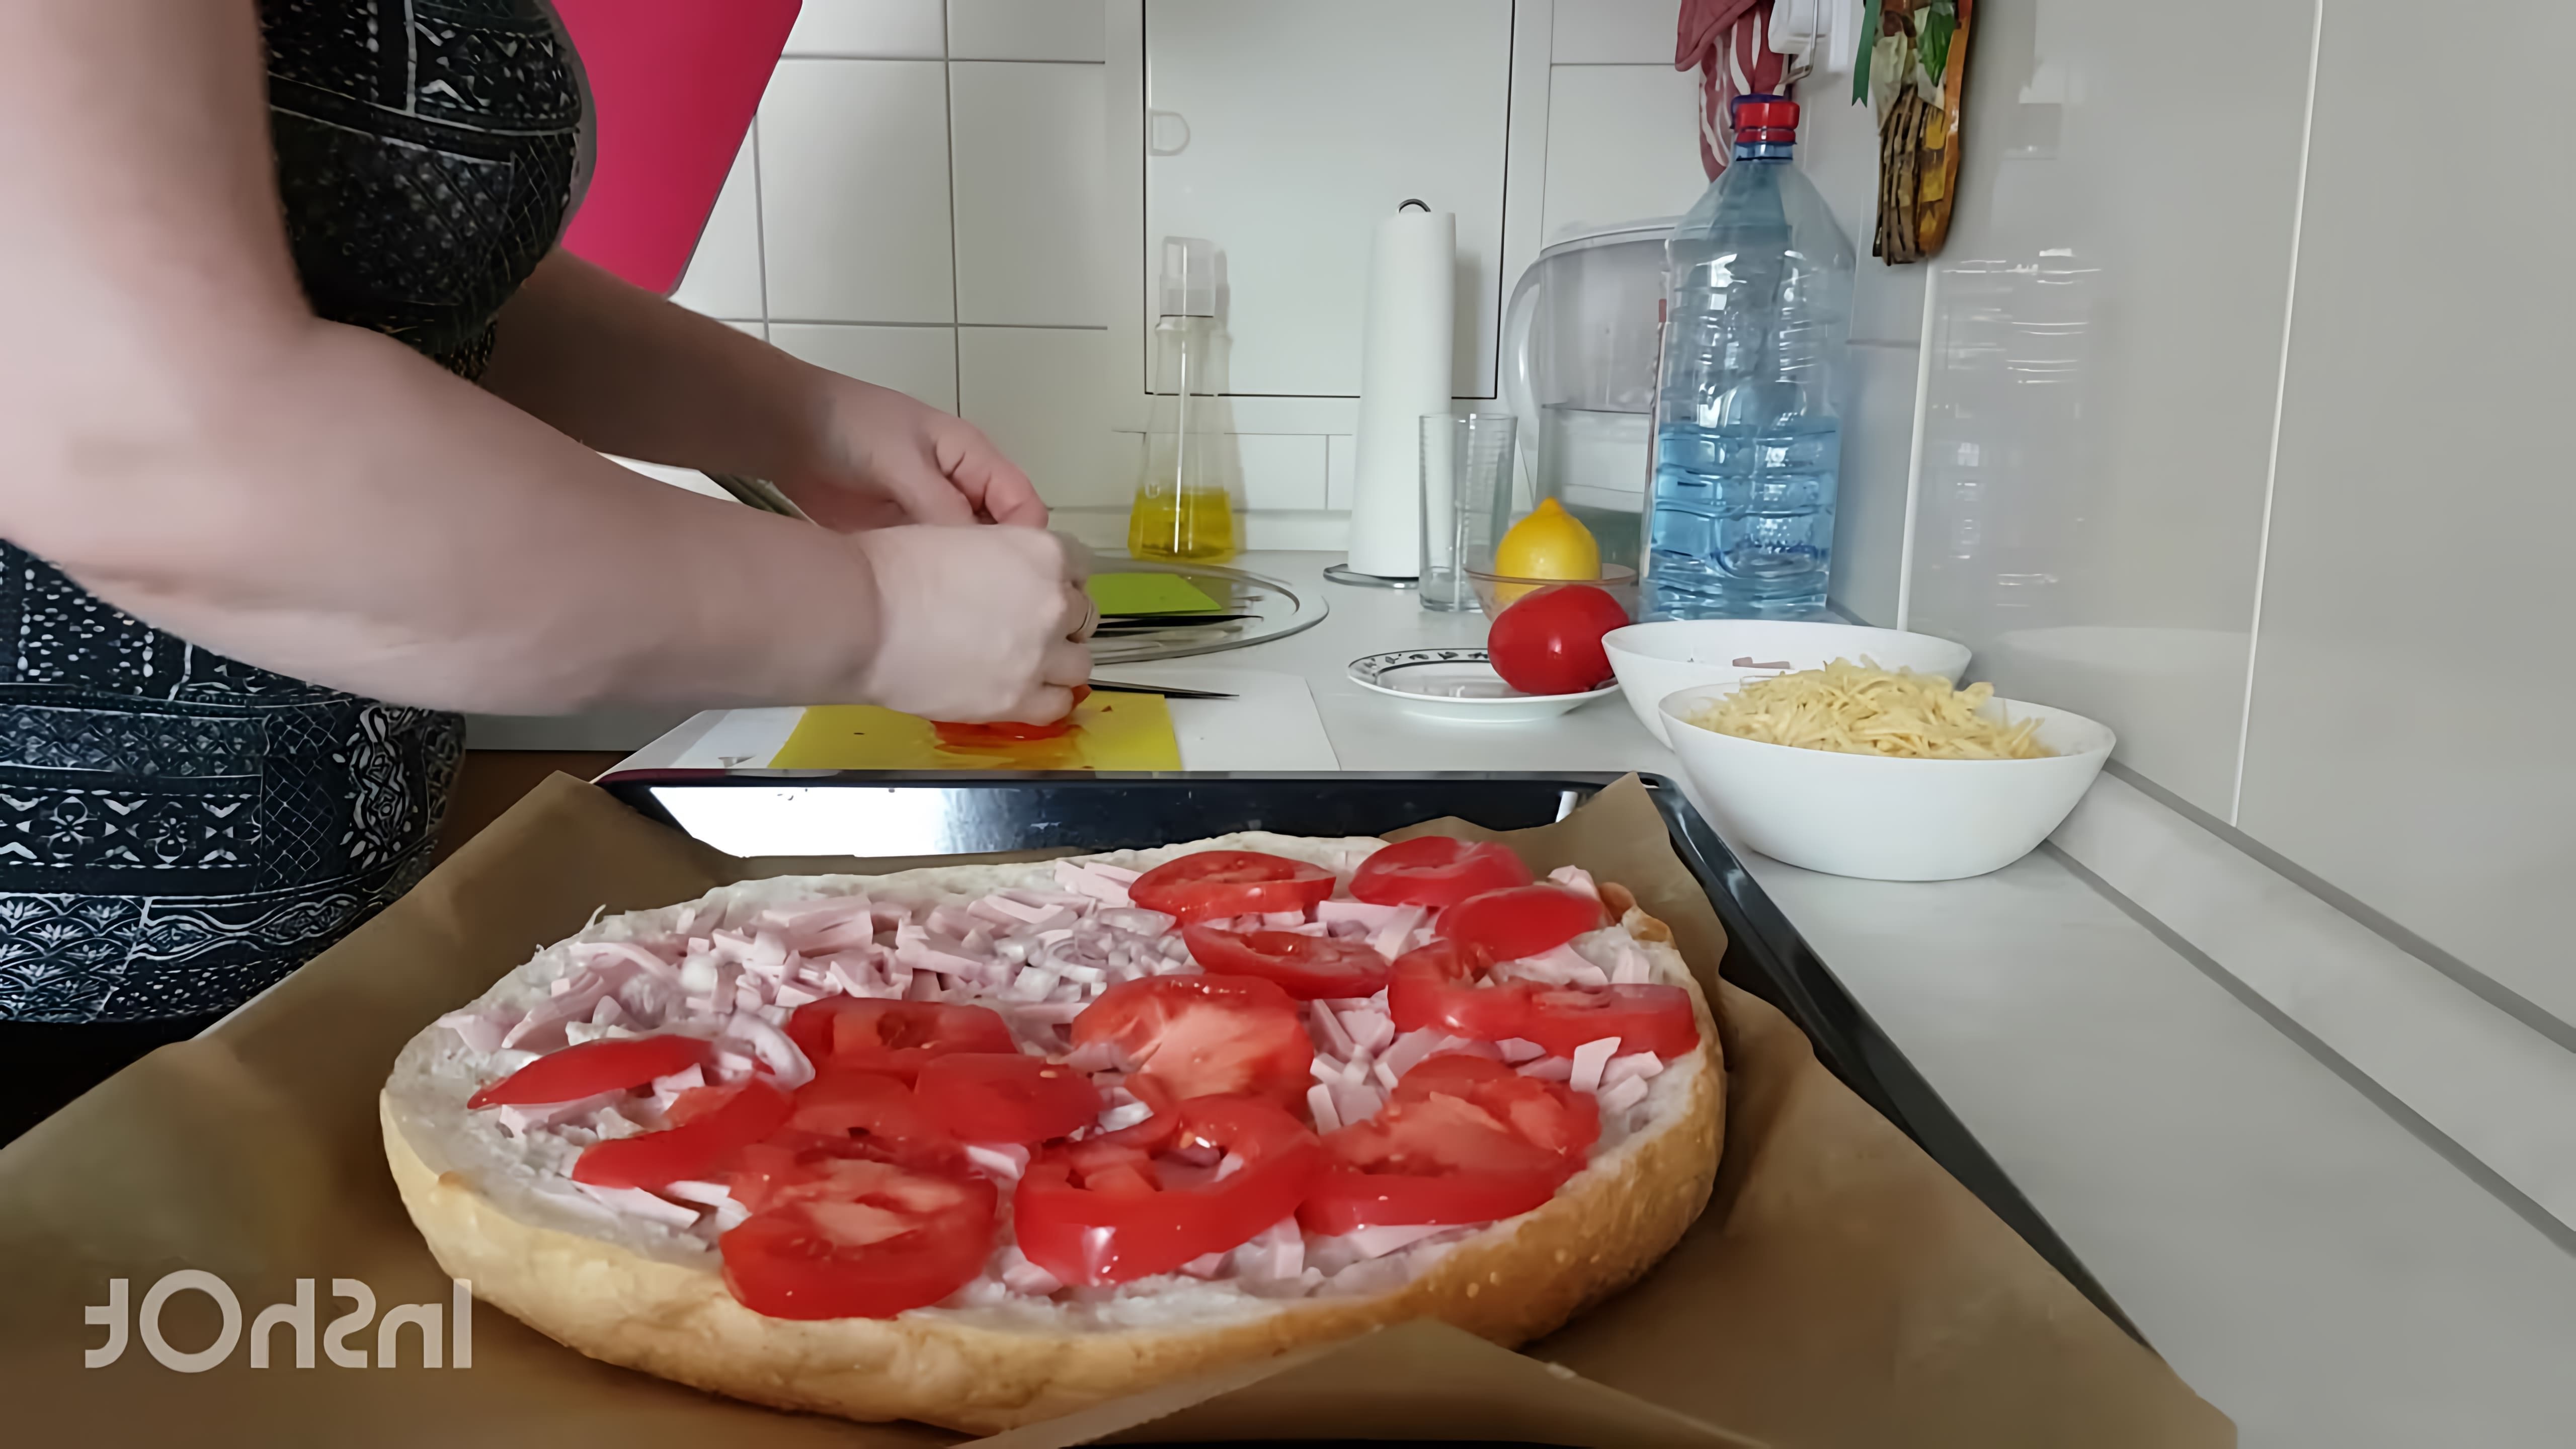 В этом видео демонстрируется процесс приготовления быстрой пиццы на лепешке